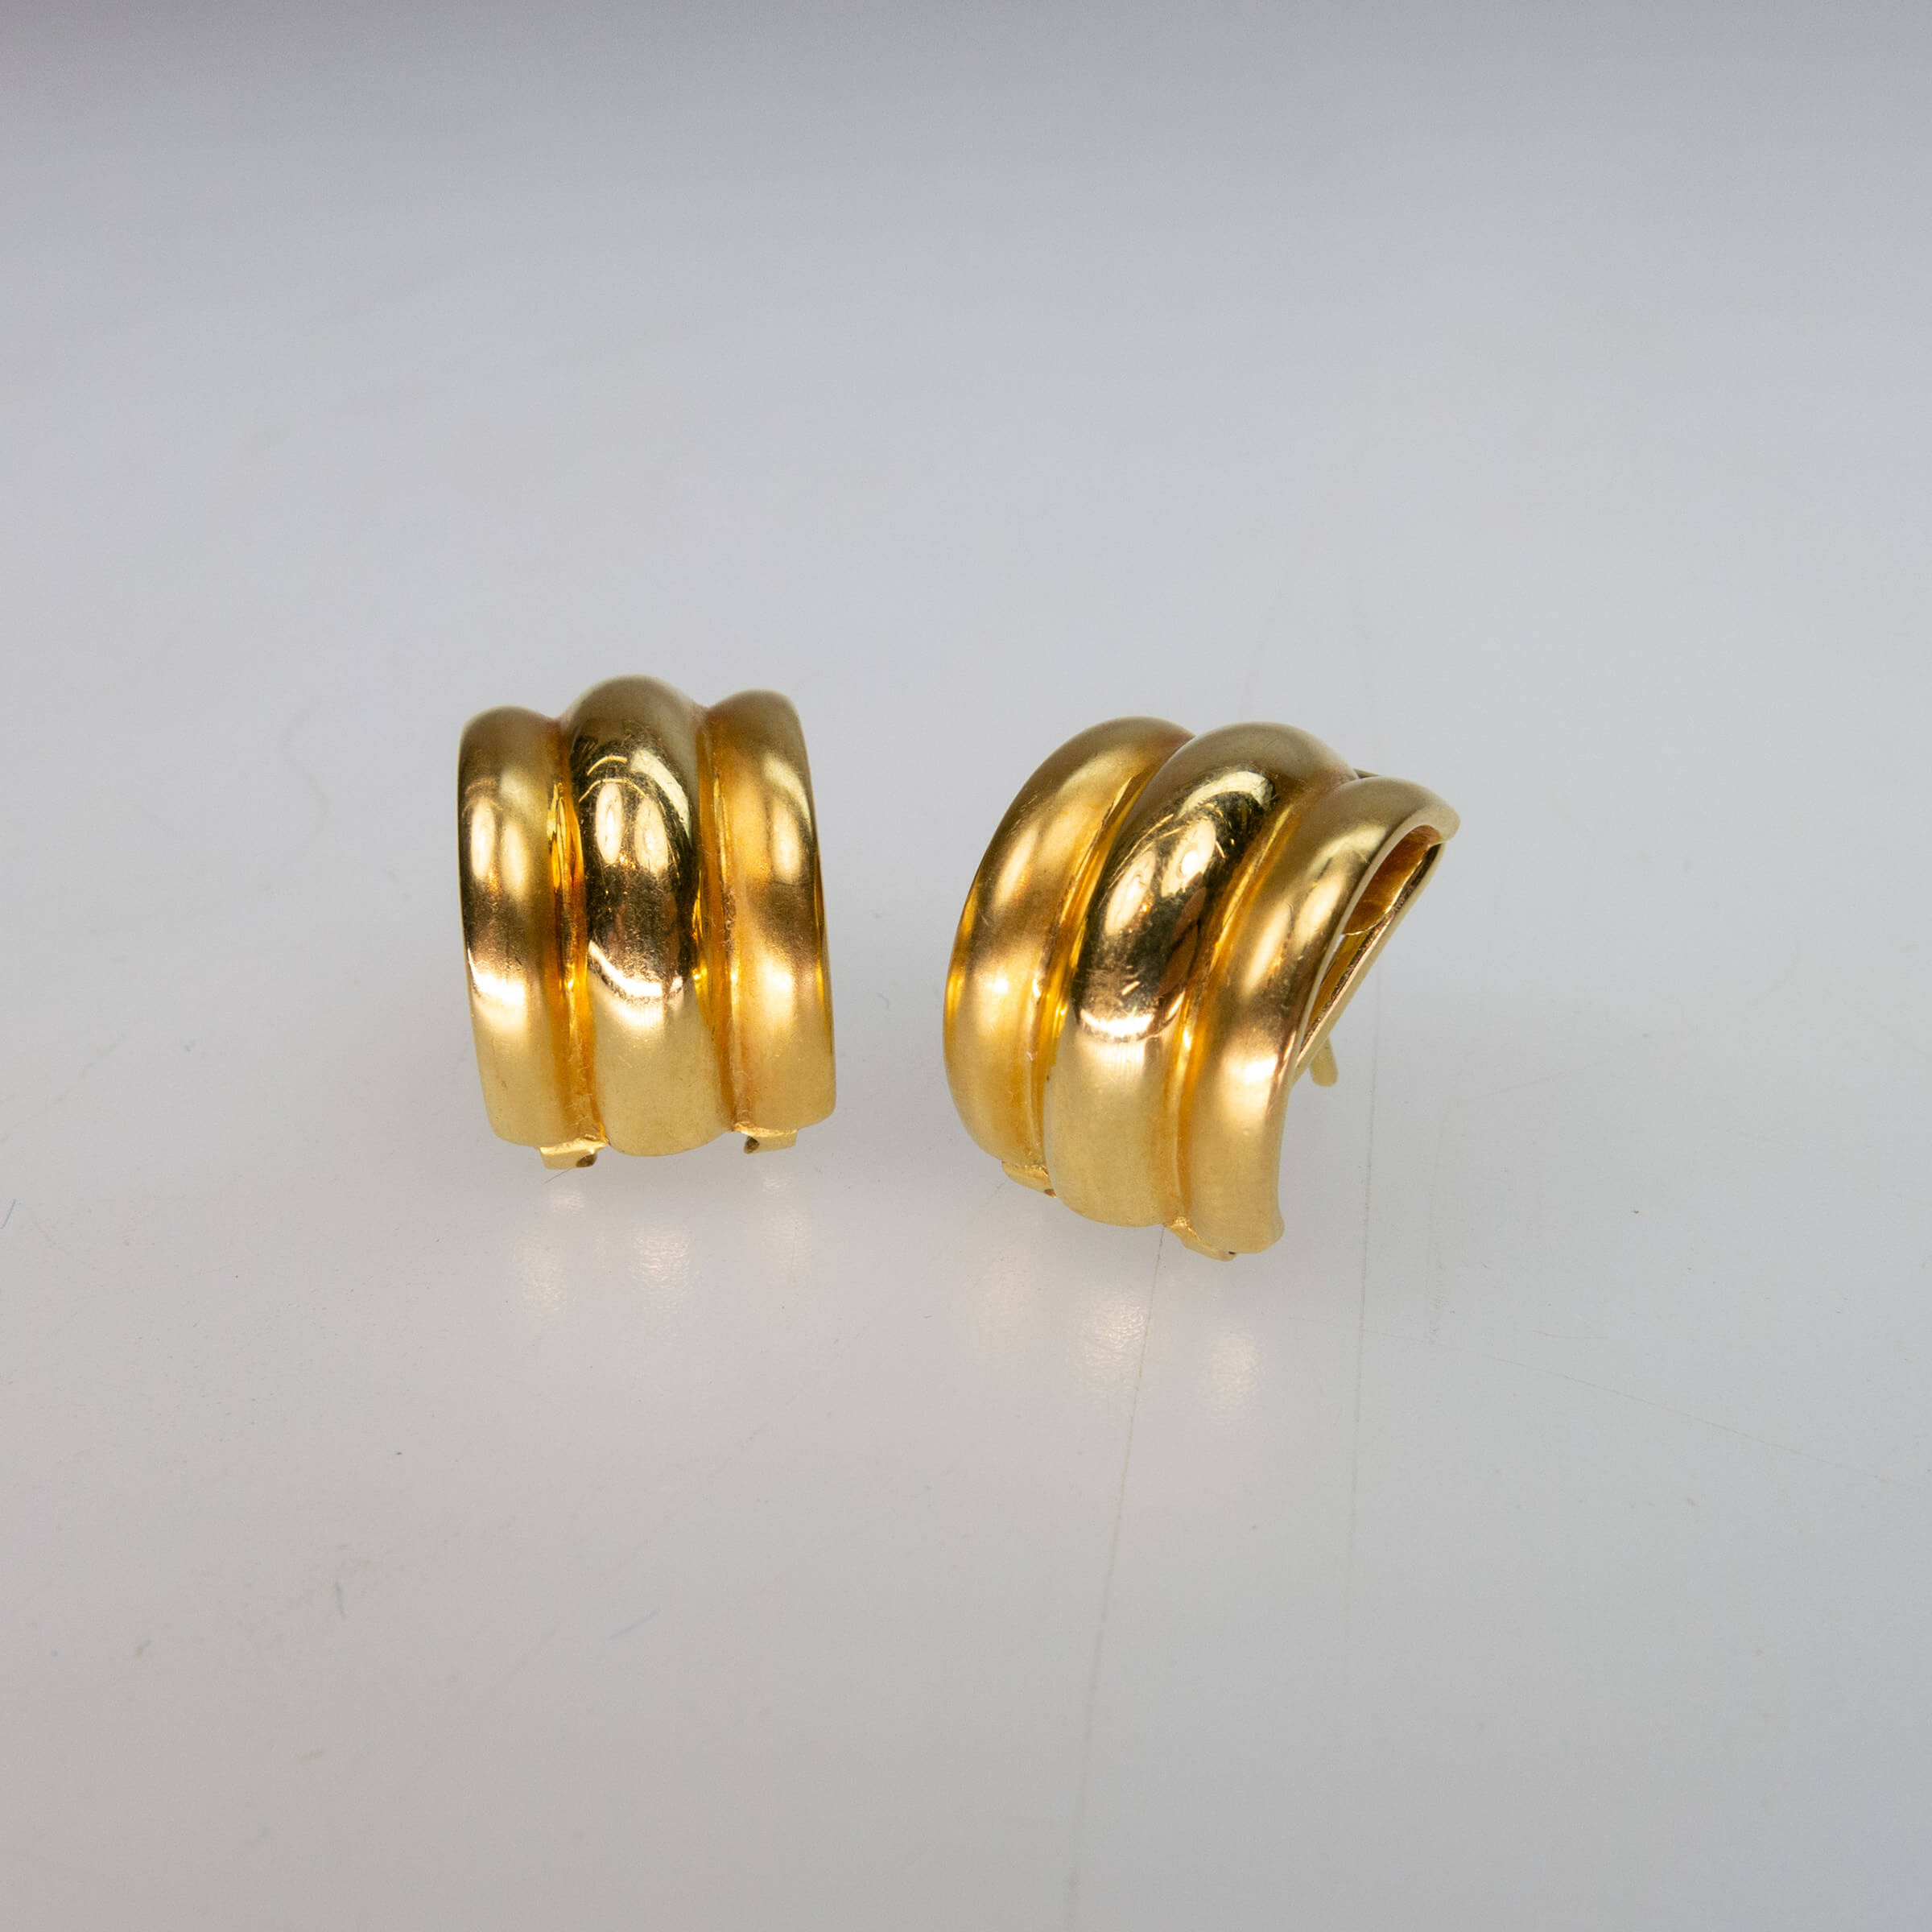 Pair Of 18k Yellow Gold Half Hoop Earrings